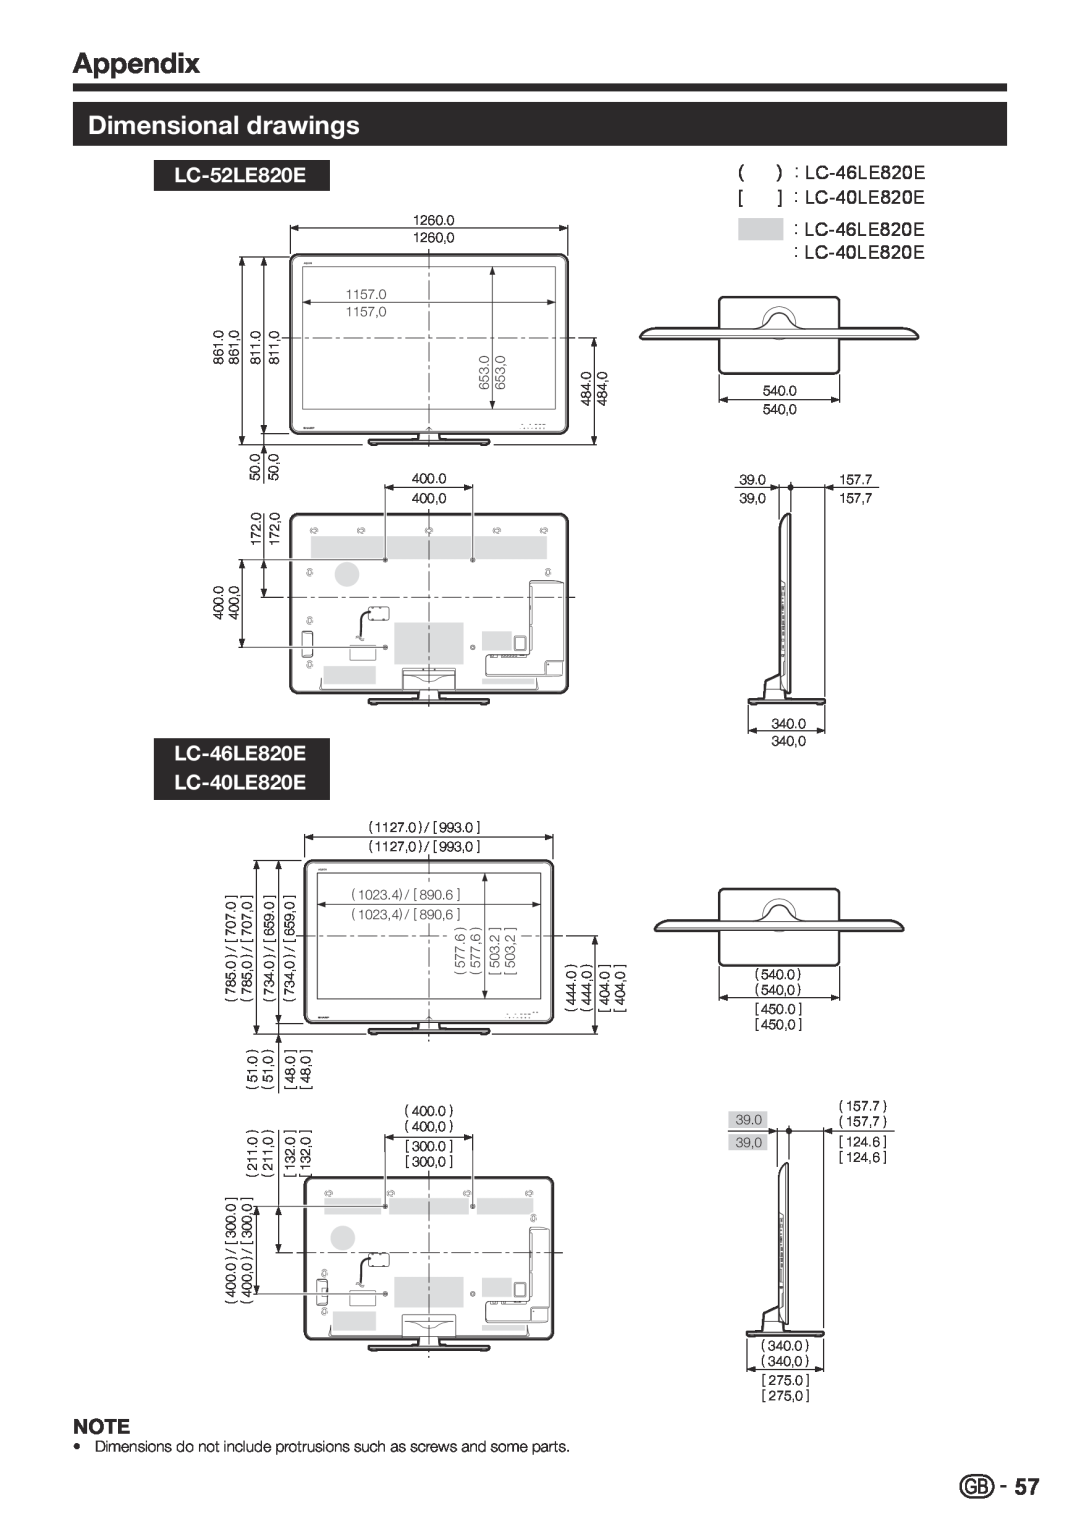 Sharp LC-46LE810E, LC-40LE810E operation manual Dimensional drawings, LC-52LE820E, LC-46LE820E LC-40LE820E, Appendix 